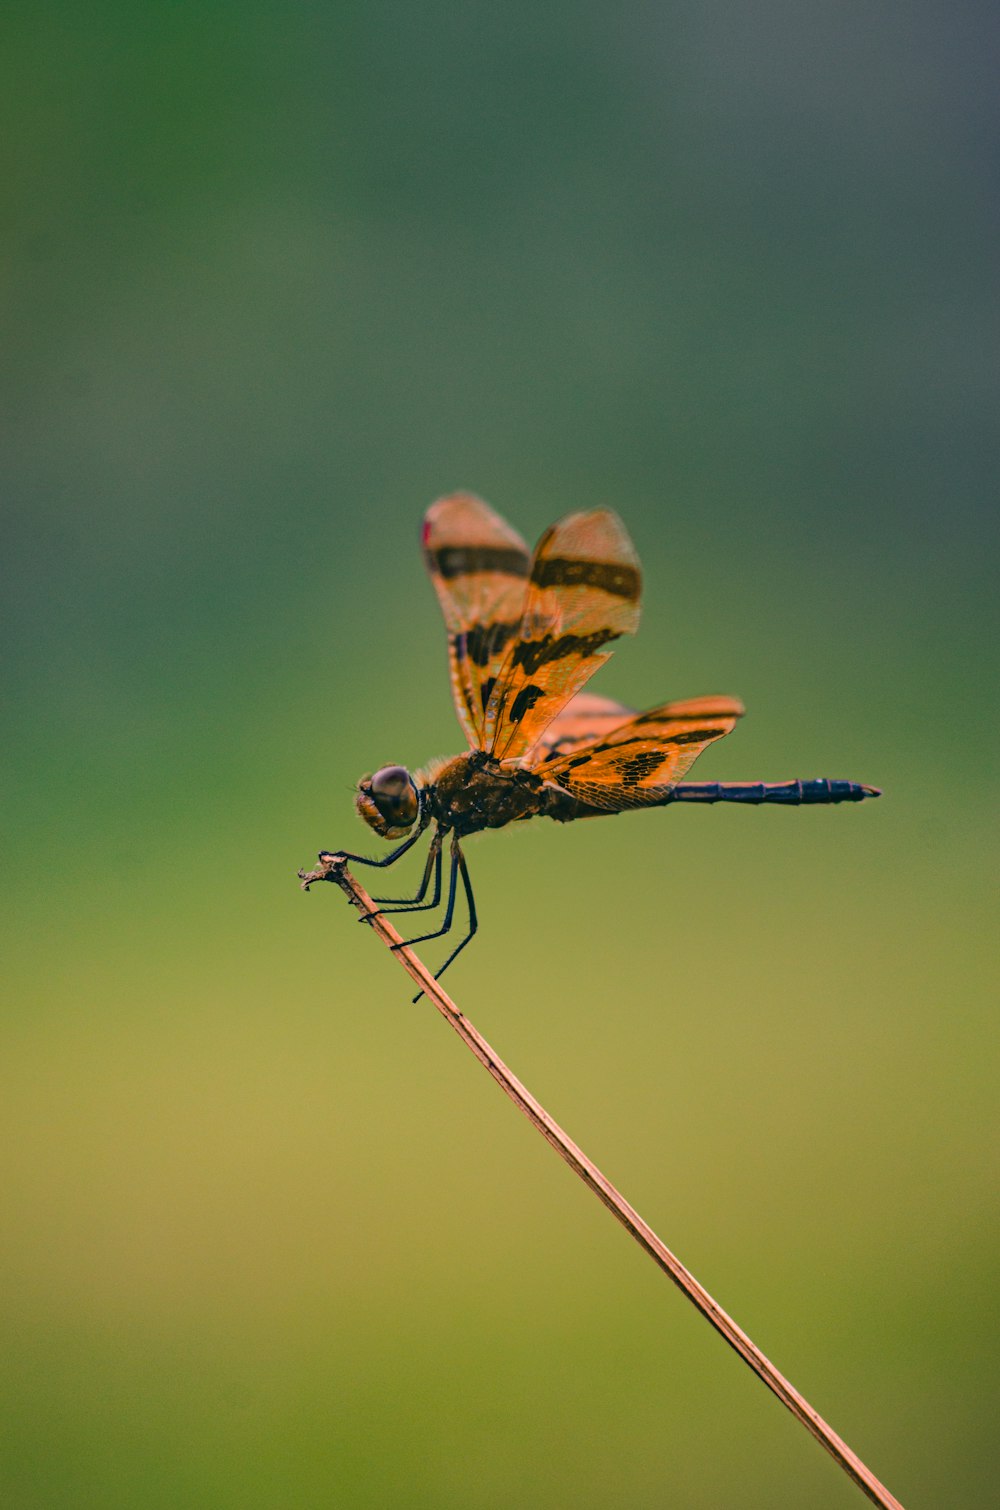 libélula marrón y negra en primeros planos durante el día